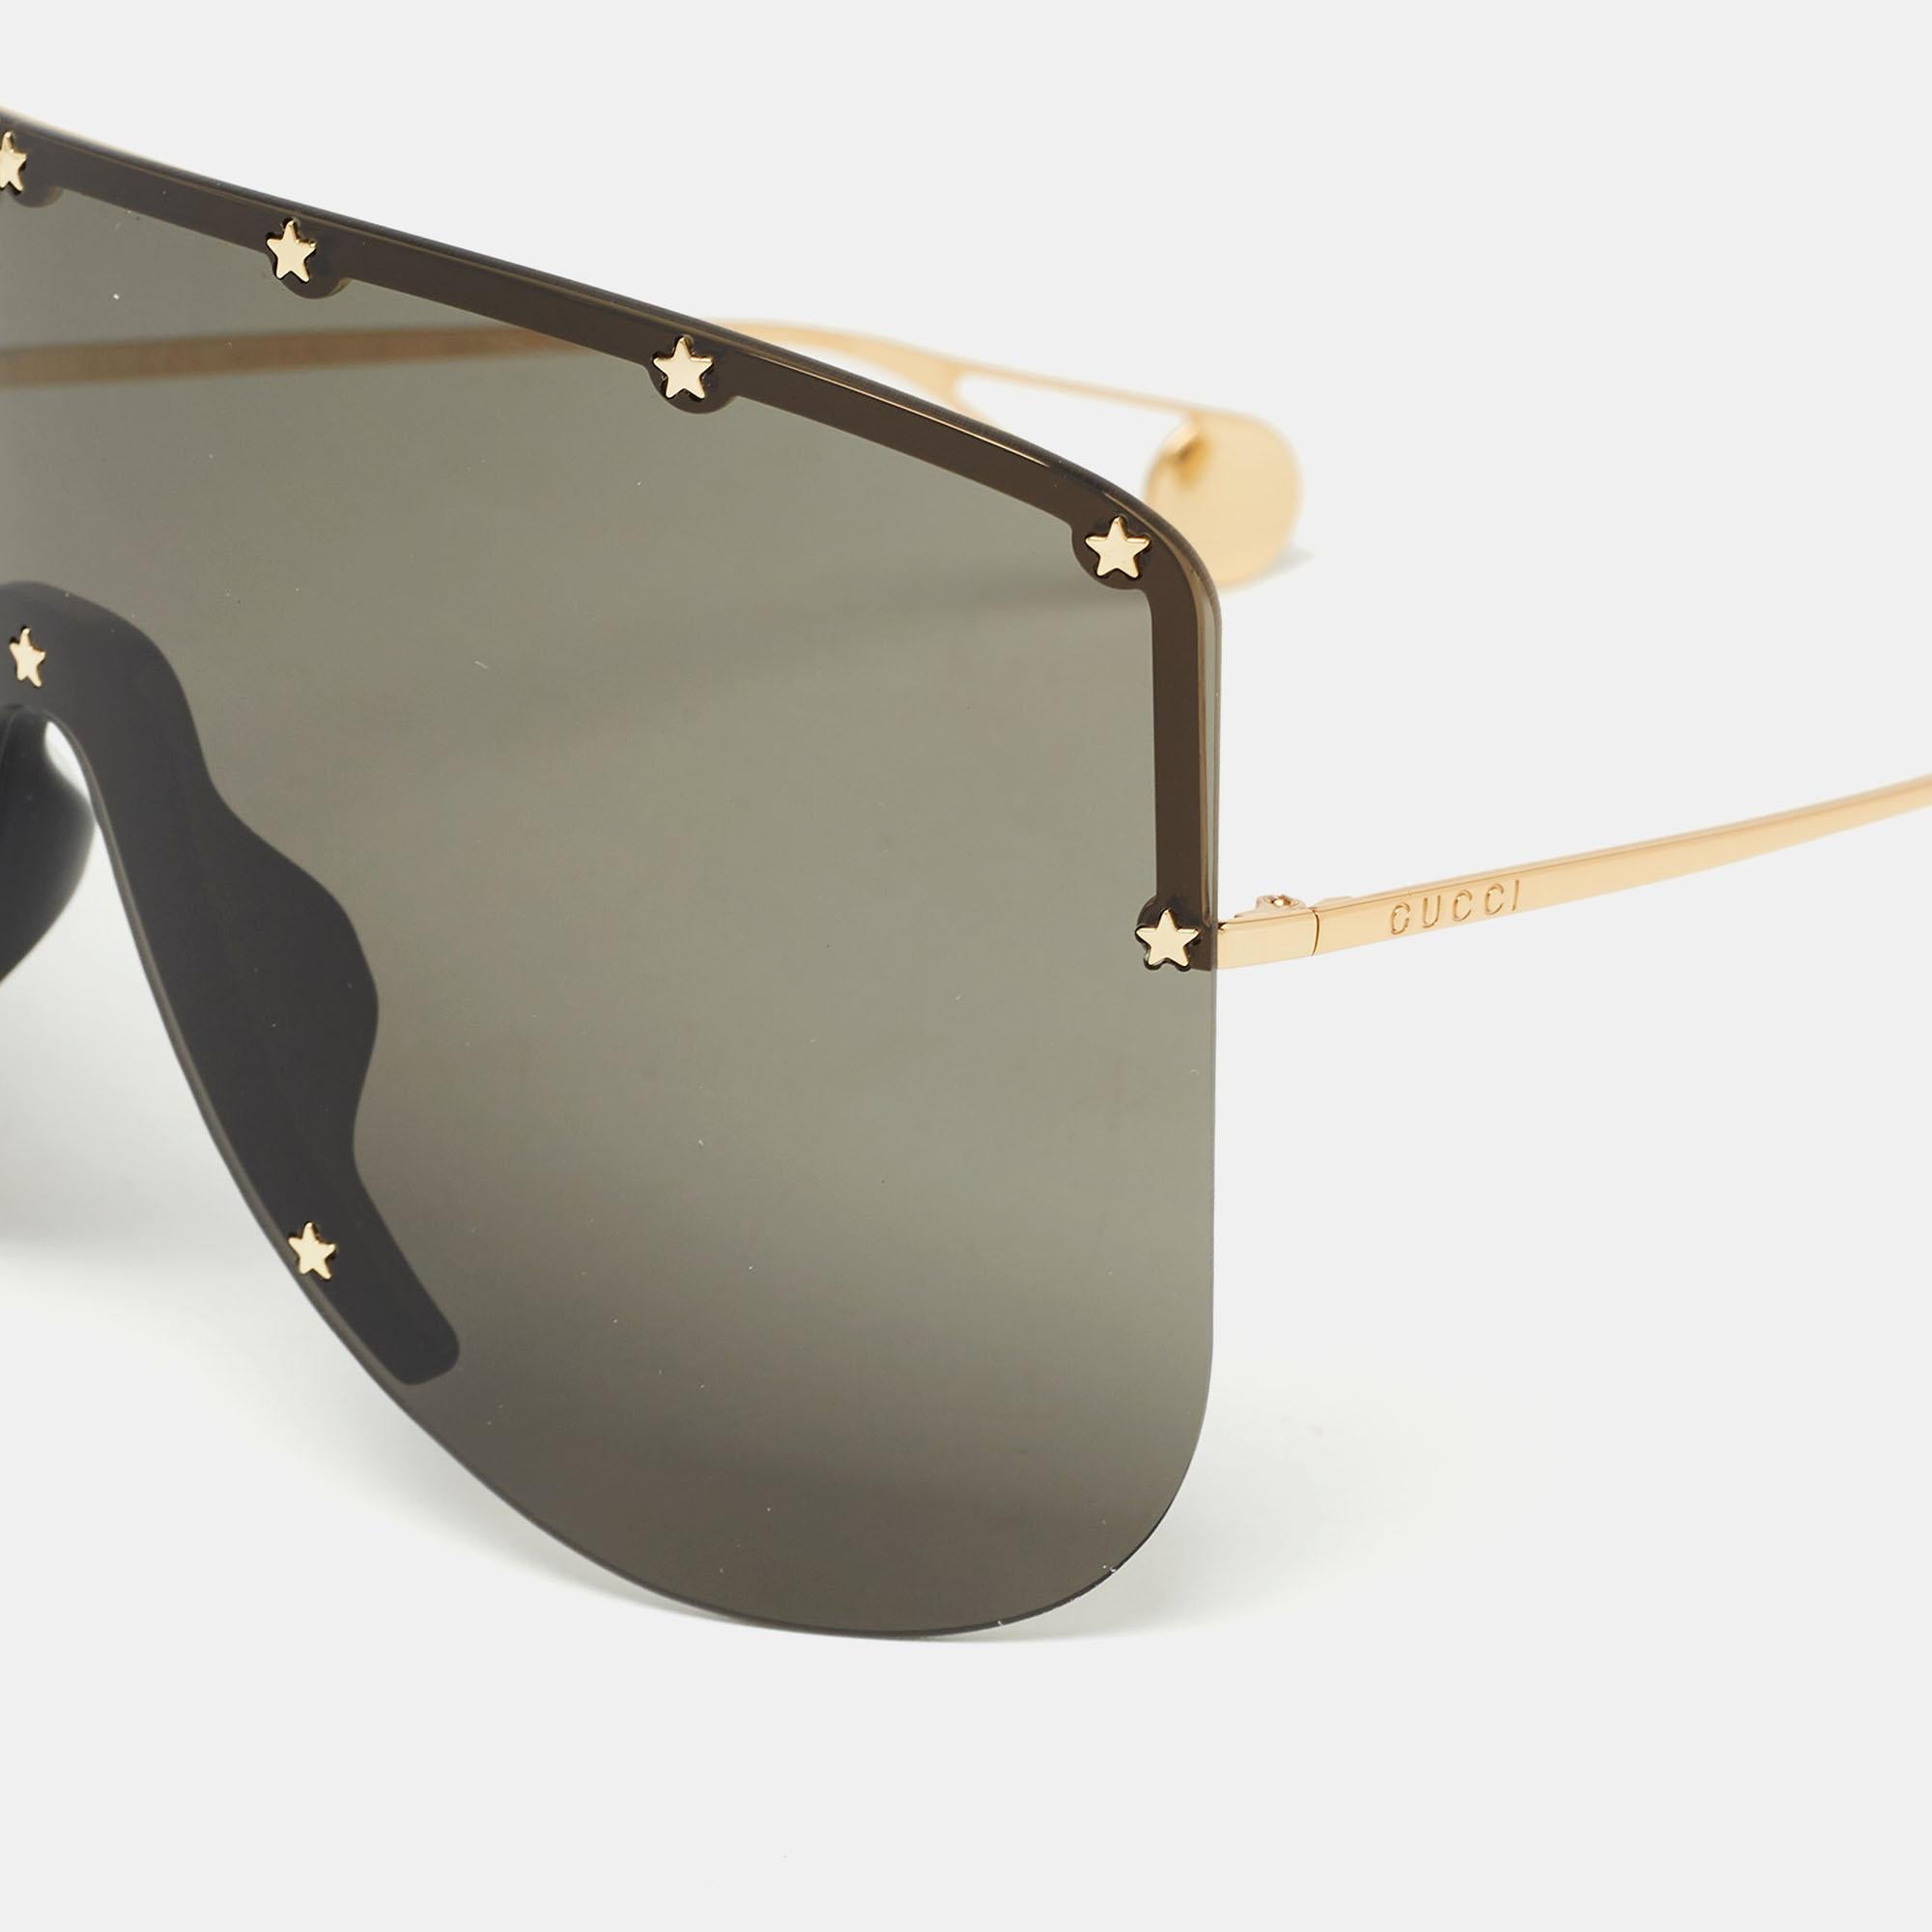 Genießen Sie die sonnigen Tage in vollem Stil und schützen Sie Ihre Augen mit dieser Gucci Sonnenbrille. Die Brille hat einen Schildrahmen, der mit hochwertigen Gläsern und Verzierungen ausgestattet ist.

Enthält
Info-Booklet, Original-Etui,